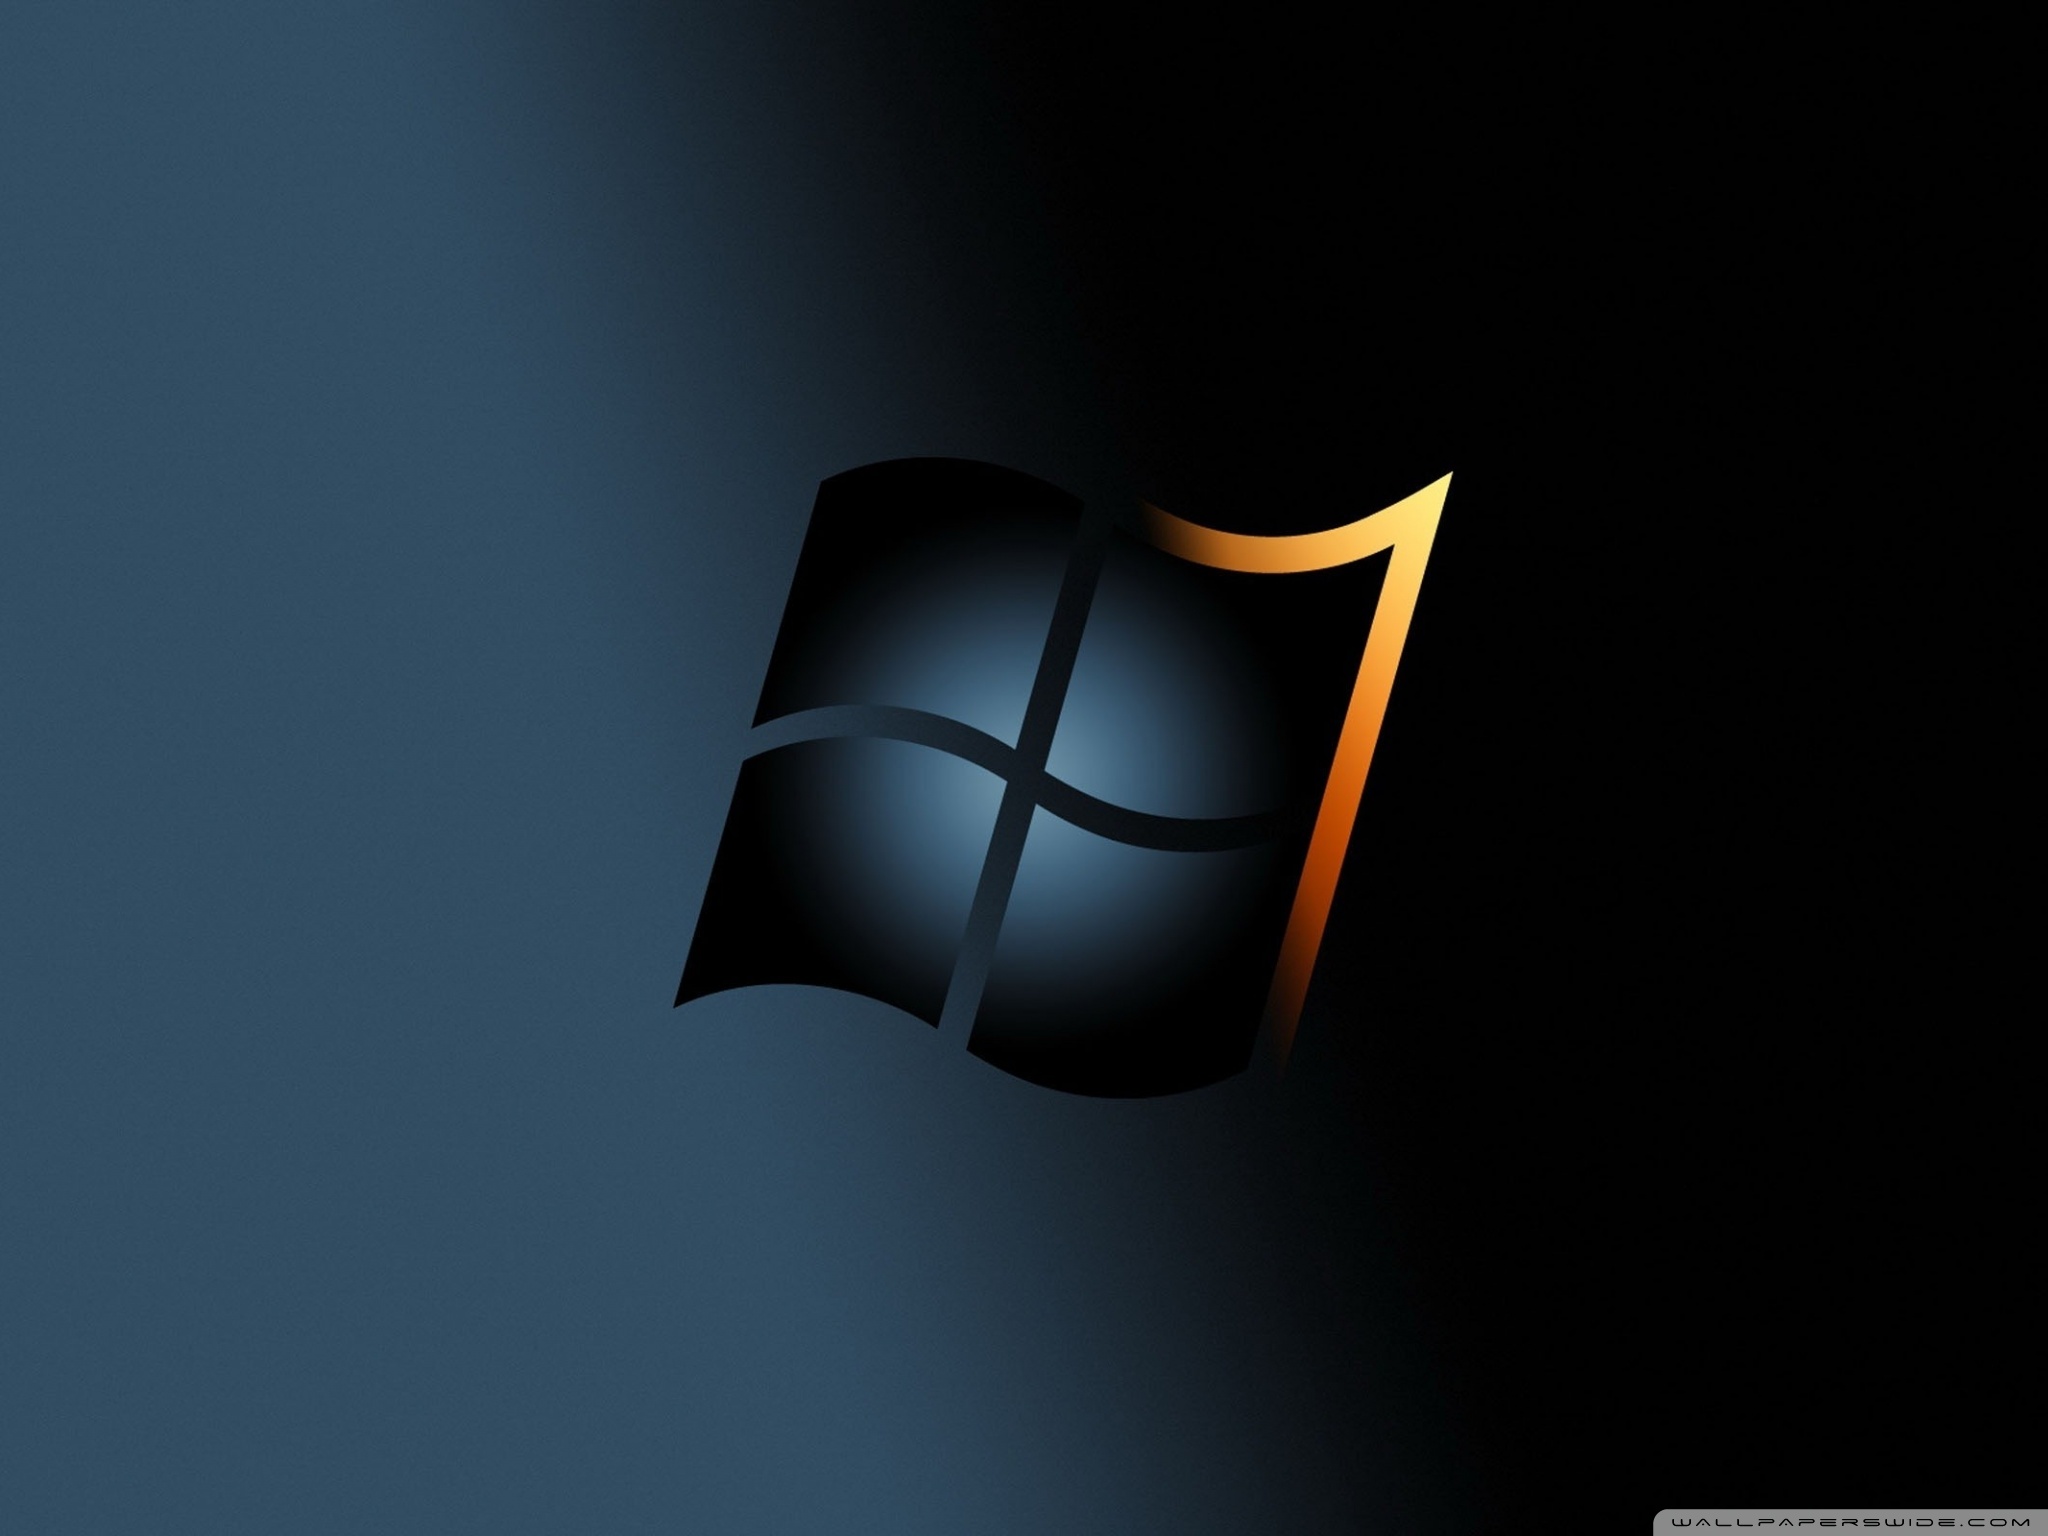 Hình nền Windows 7 trên WallpaperDog sẽ đưa bạn vào thế giới hình ảnh đầy màu sắc và tươi vui. Với rất nhiều lựa chọn đa dạng và phong phú, bạn hoàn toàn có thể tìm thấy bức ảnh yêu thích của mình để trang trí cho desktop đẹp lung linh.